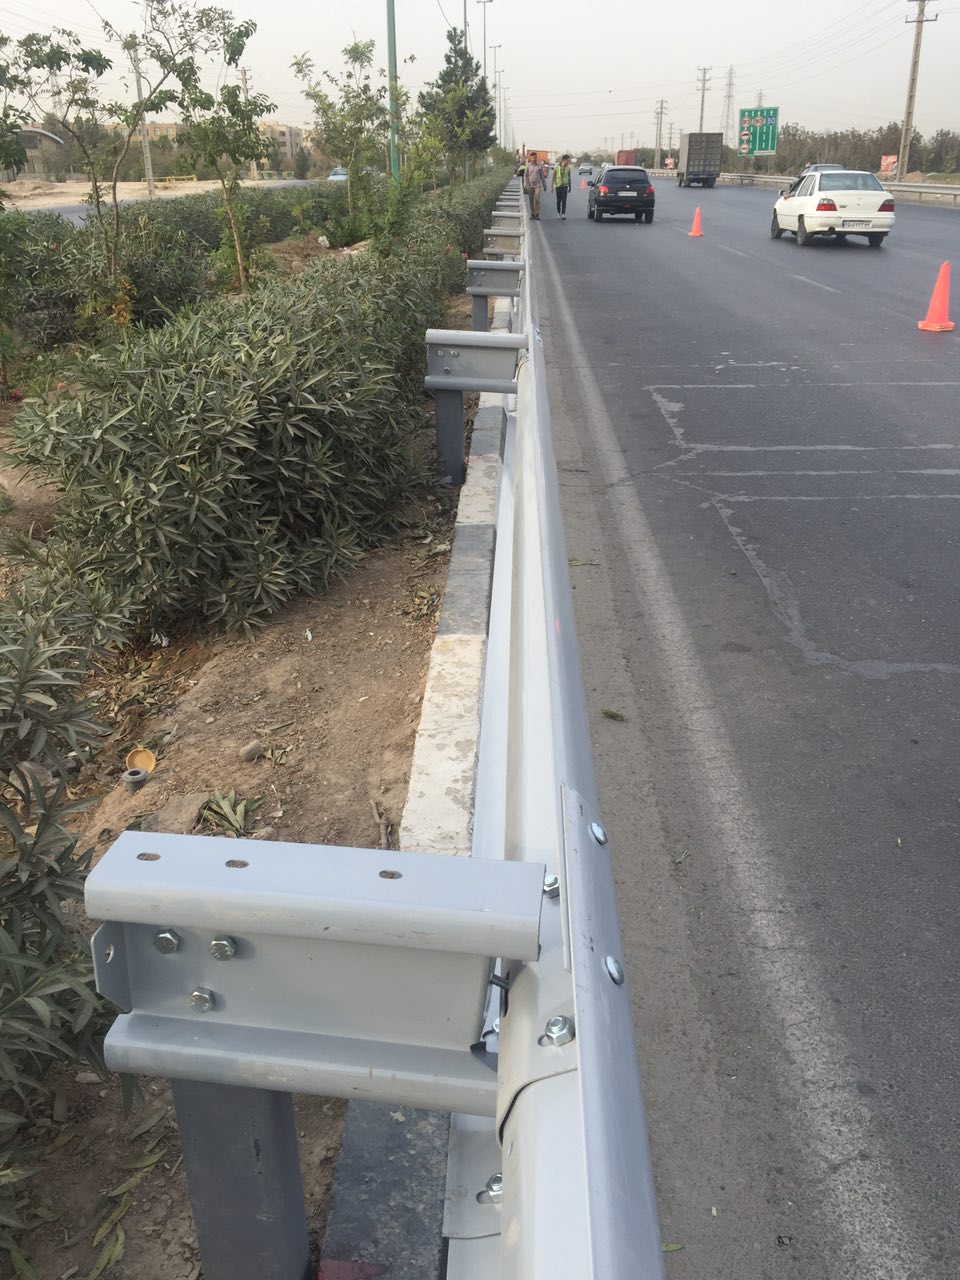 اصلاح و تعمیر علائم و تجهیزات ترافیکی( گاردریل ) در بلوار الغدیر